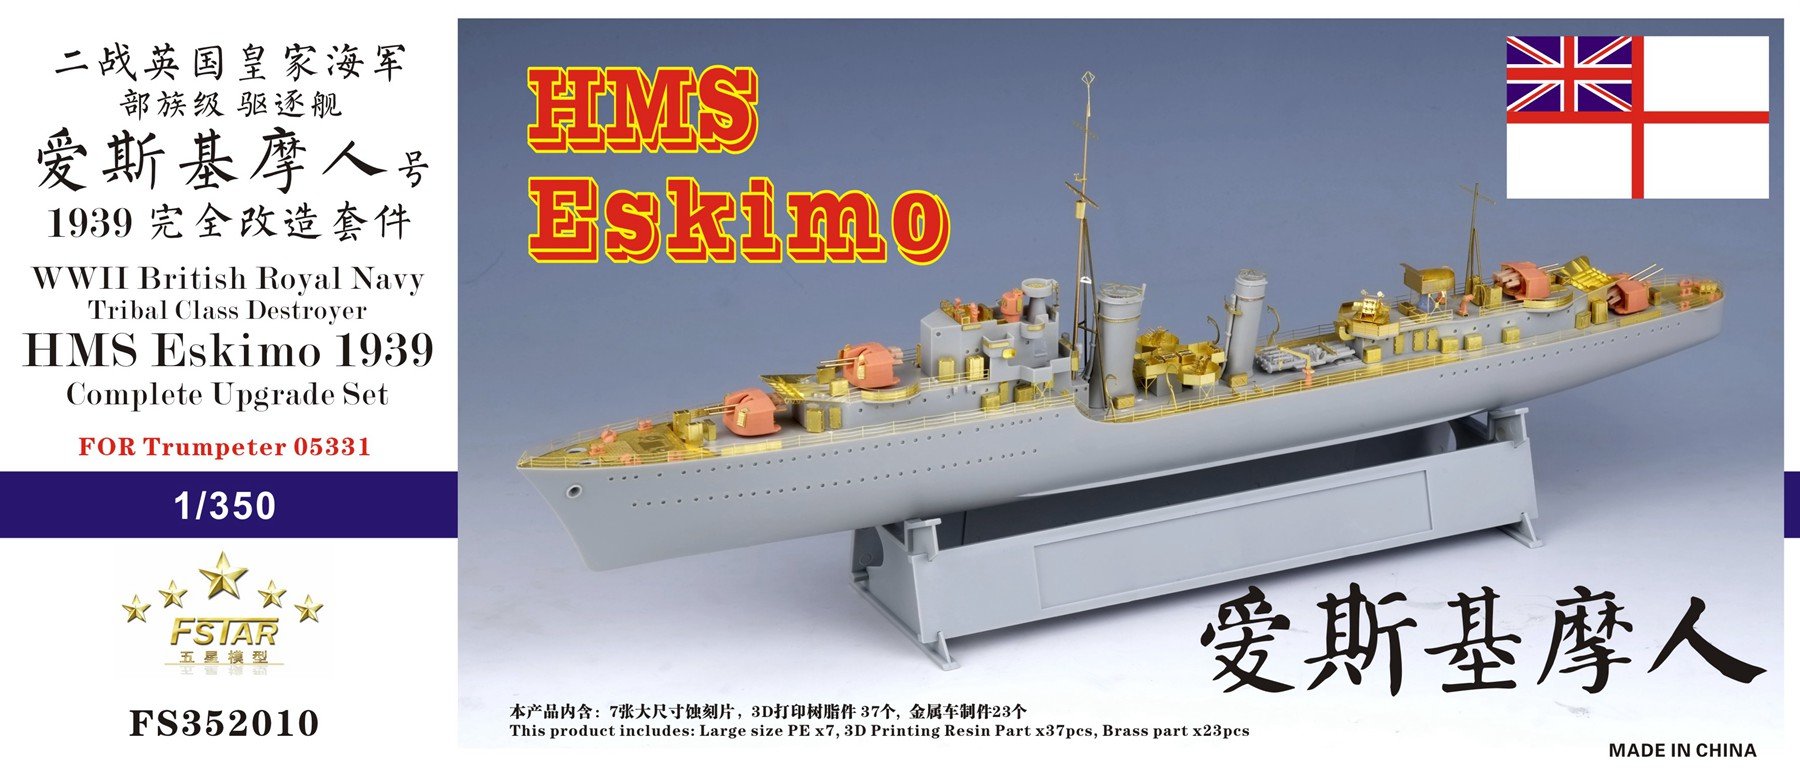 1/350 二战英国皇家海军部族级驱逐舰爱斯基摩人号1939年完全改造套件(配小号手05331) - 点击图像关闭